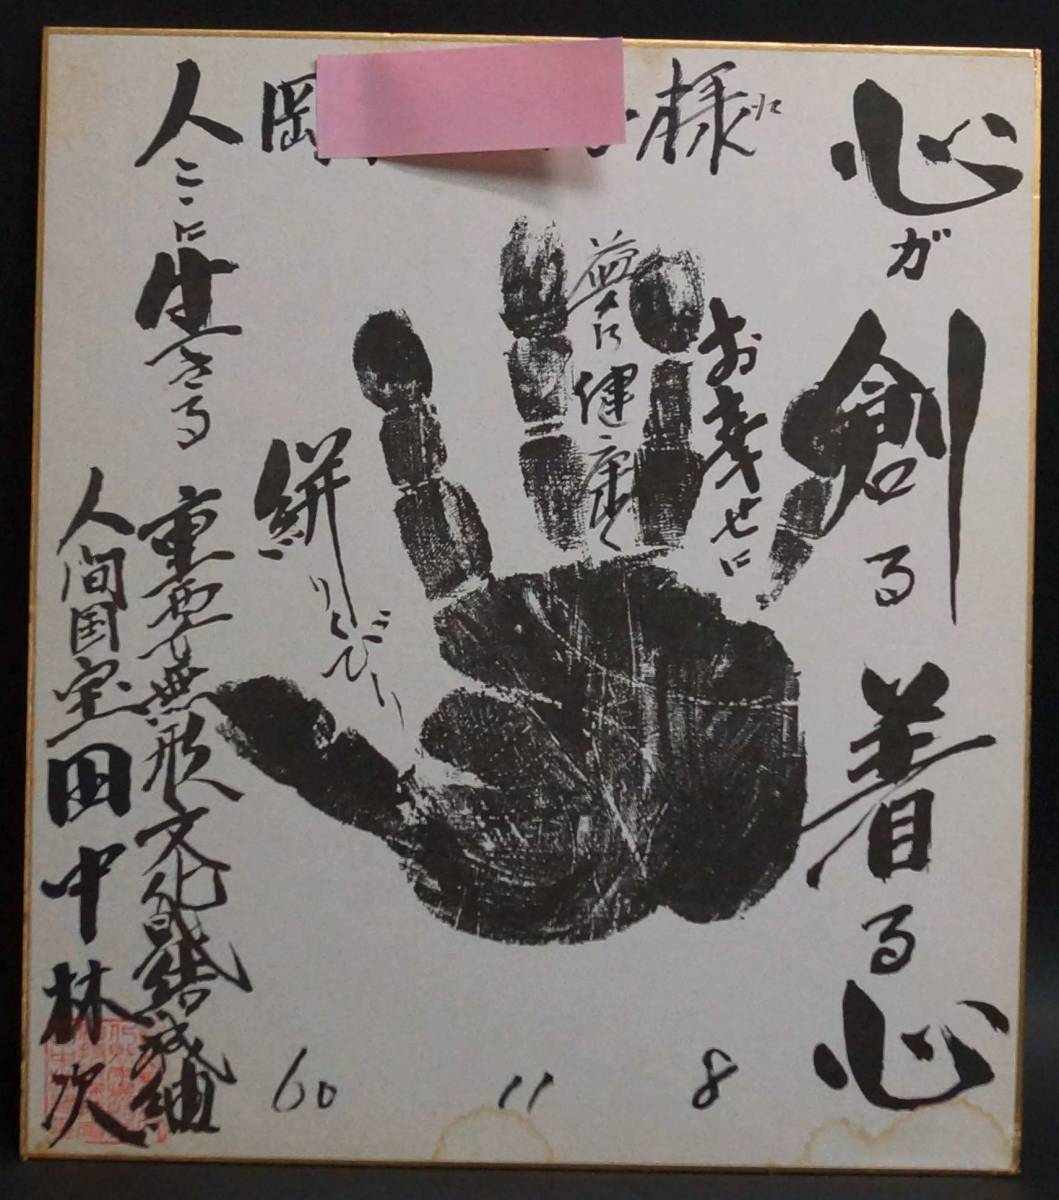 [Saki] Importante formación de bienes culturales intangibles Tesoro nacional viviente Tsumugi Huella autografiada de la mano de Tanaka Rinji shikishi ★Antique★s50608, antiguo, recopilación, firmar, otros